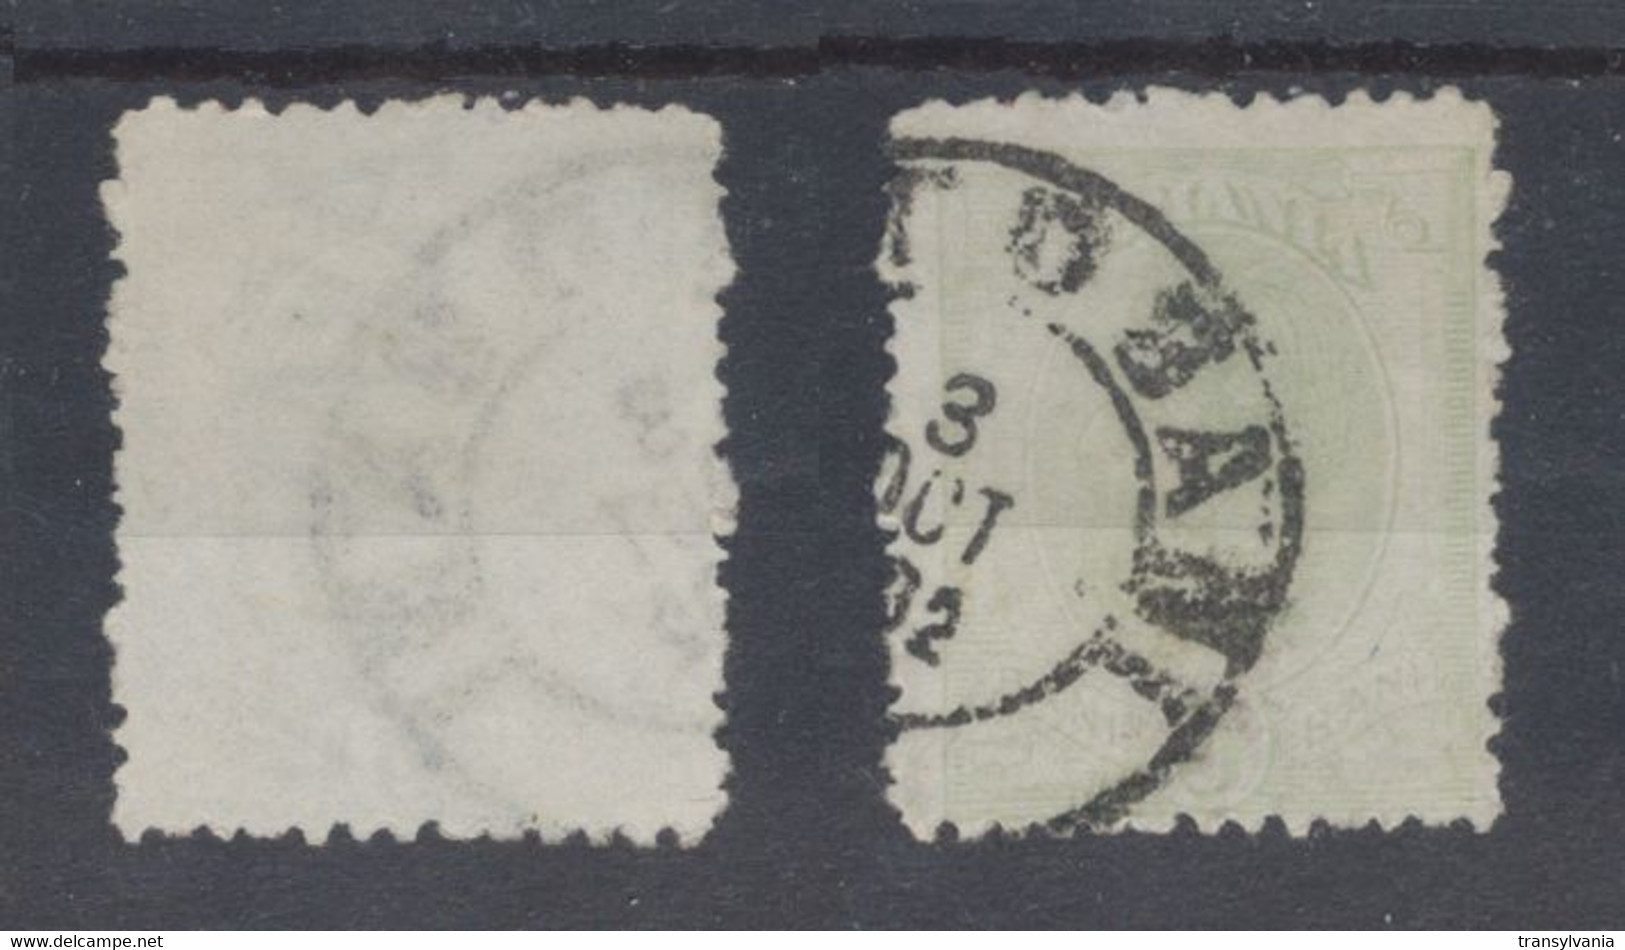 Romania 1900 Wheat Ear Issue 5 Bani Used Stamp With Scarce JOHANNOT Watermark - Abarten Und Kuriositäten